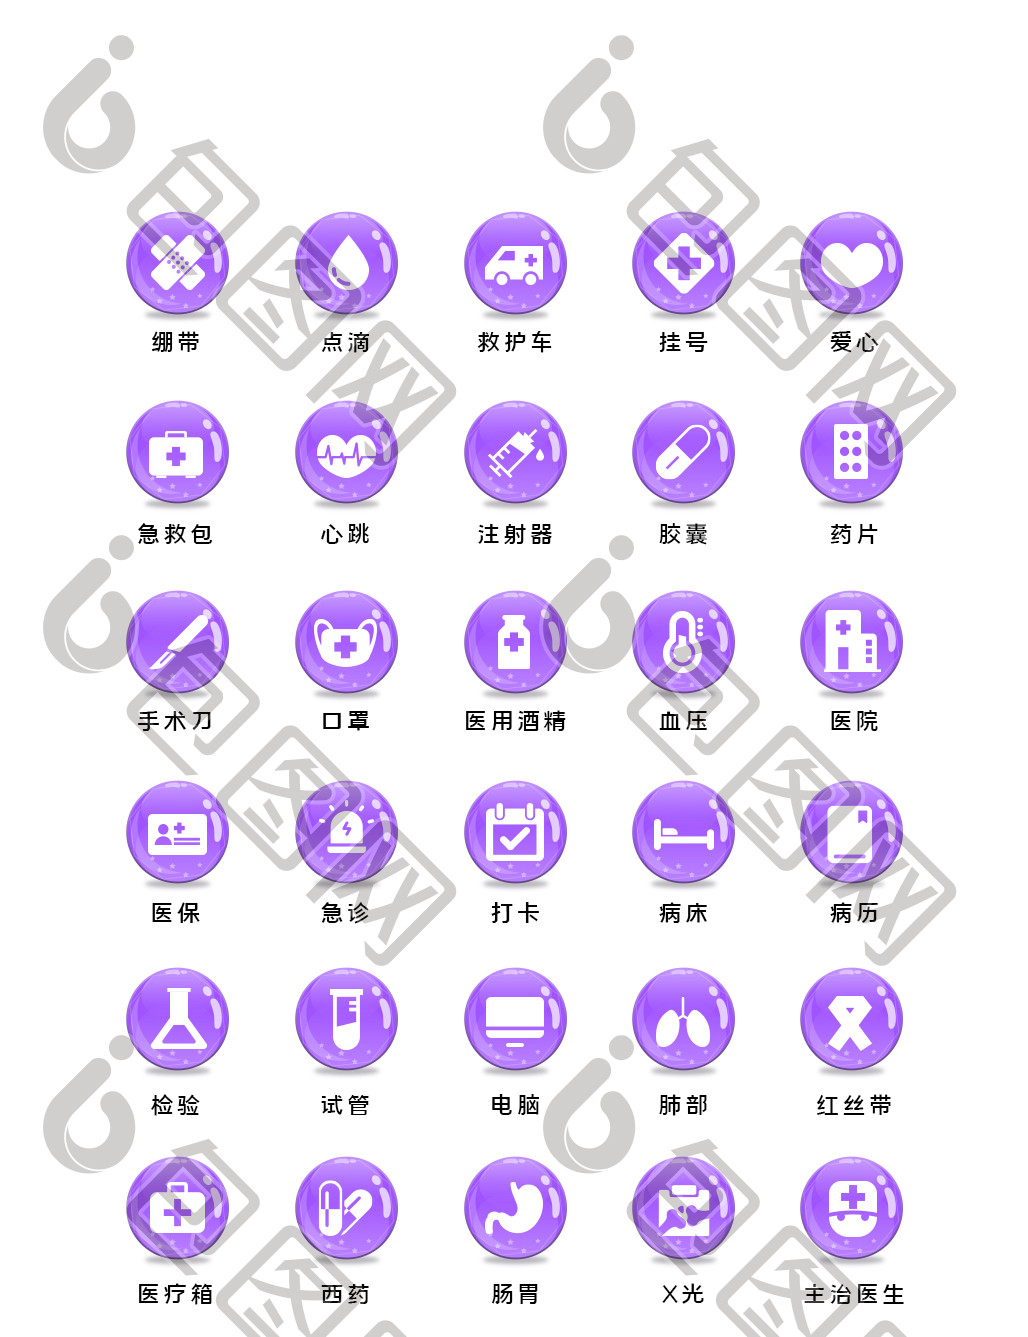 图网提供精美好看的紫色医疗app小程序主题矢量icon图标素材免费下载